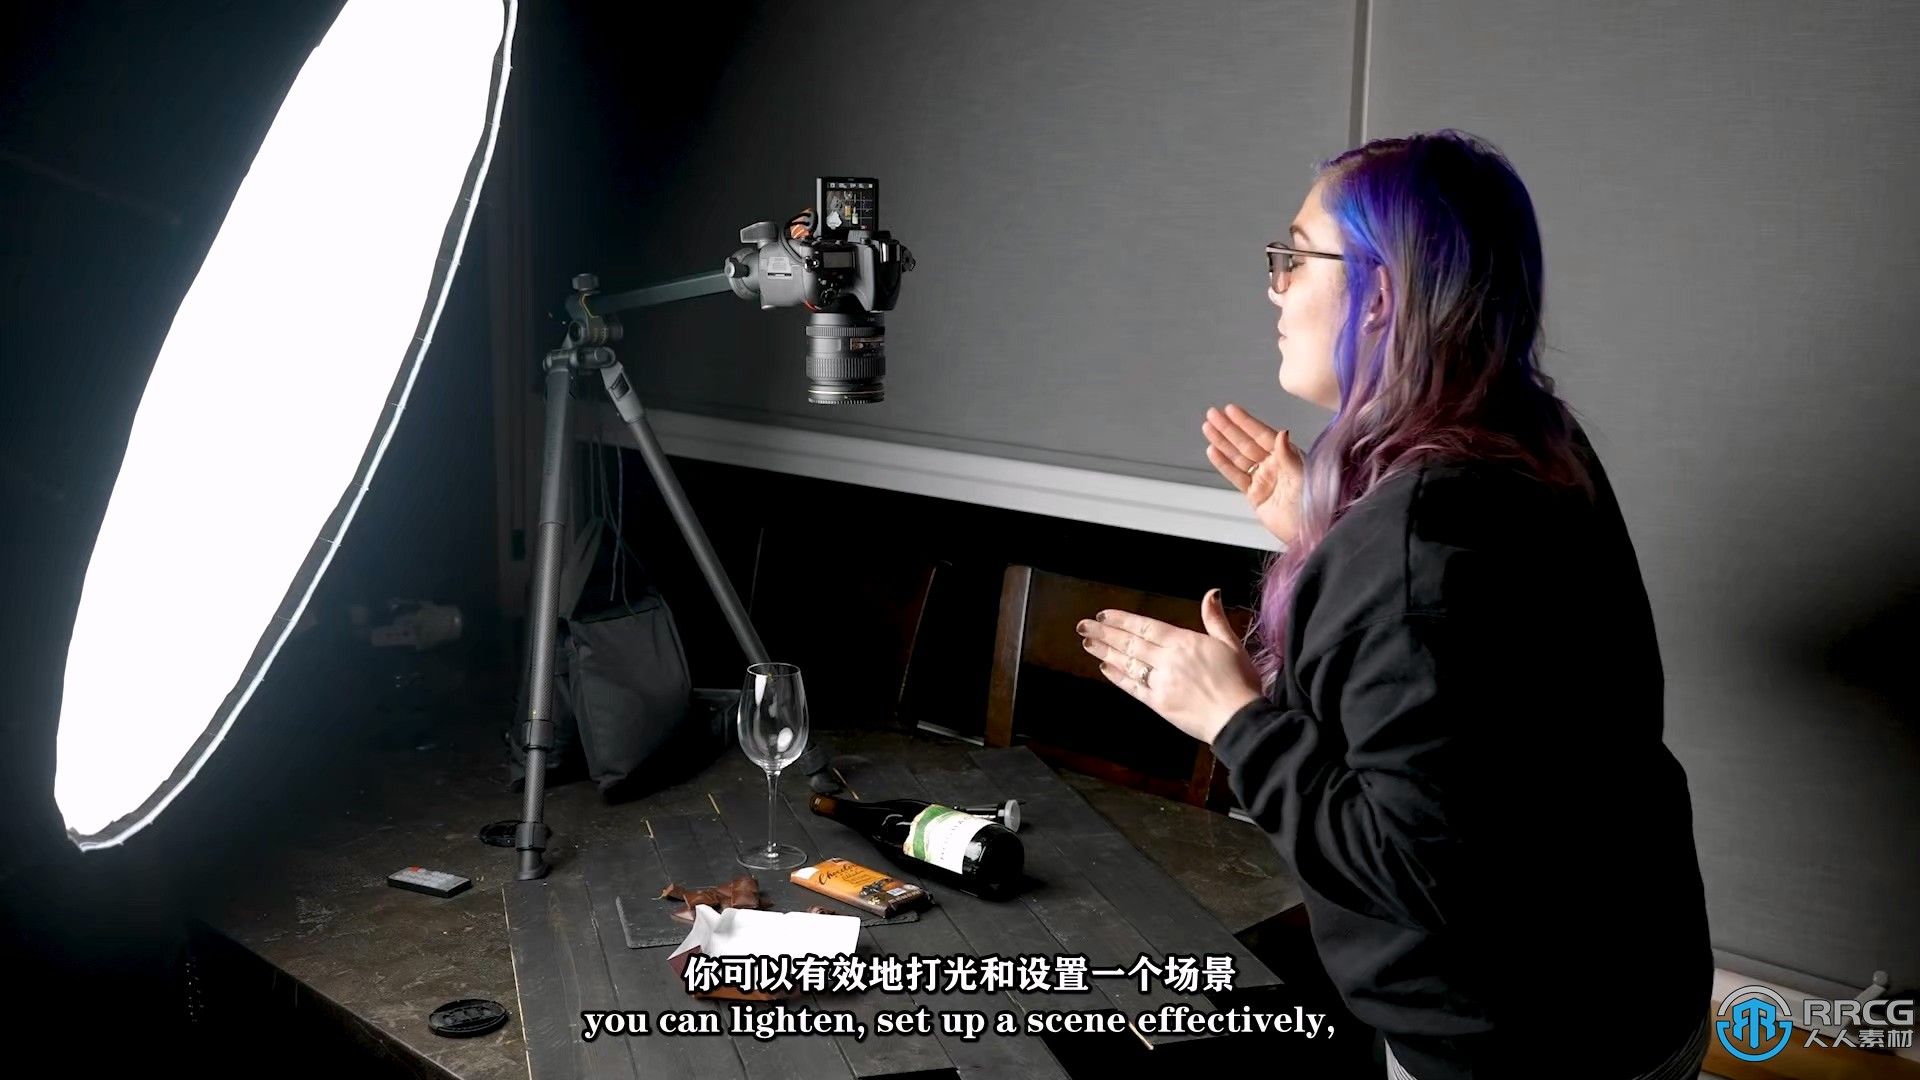 【中文字幕】红外光线照明摄影艺术训练视频教程